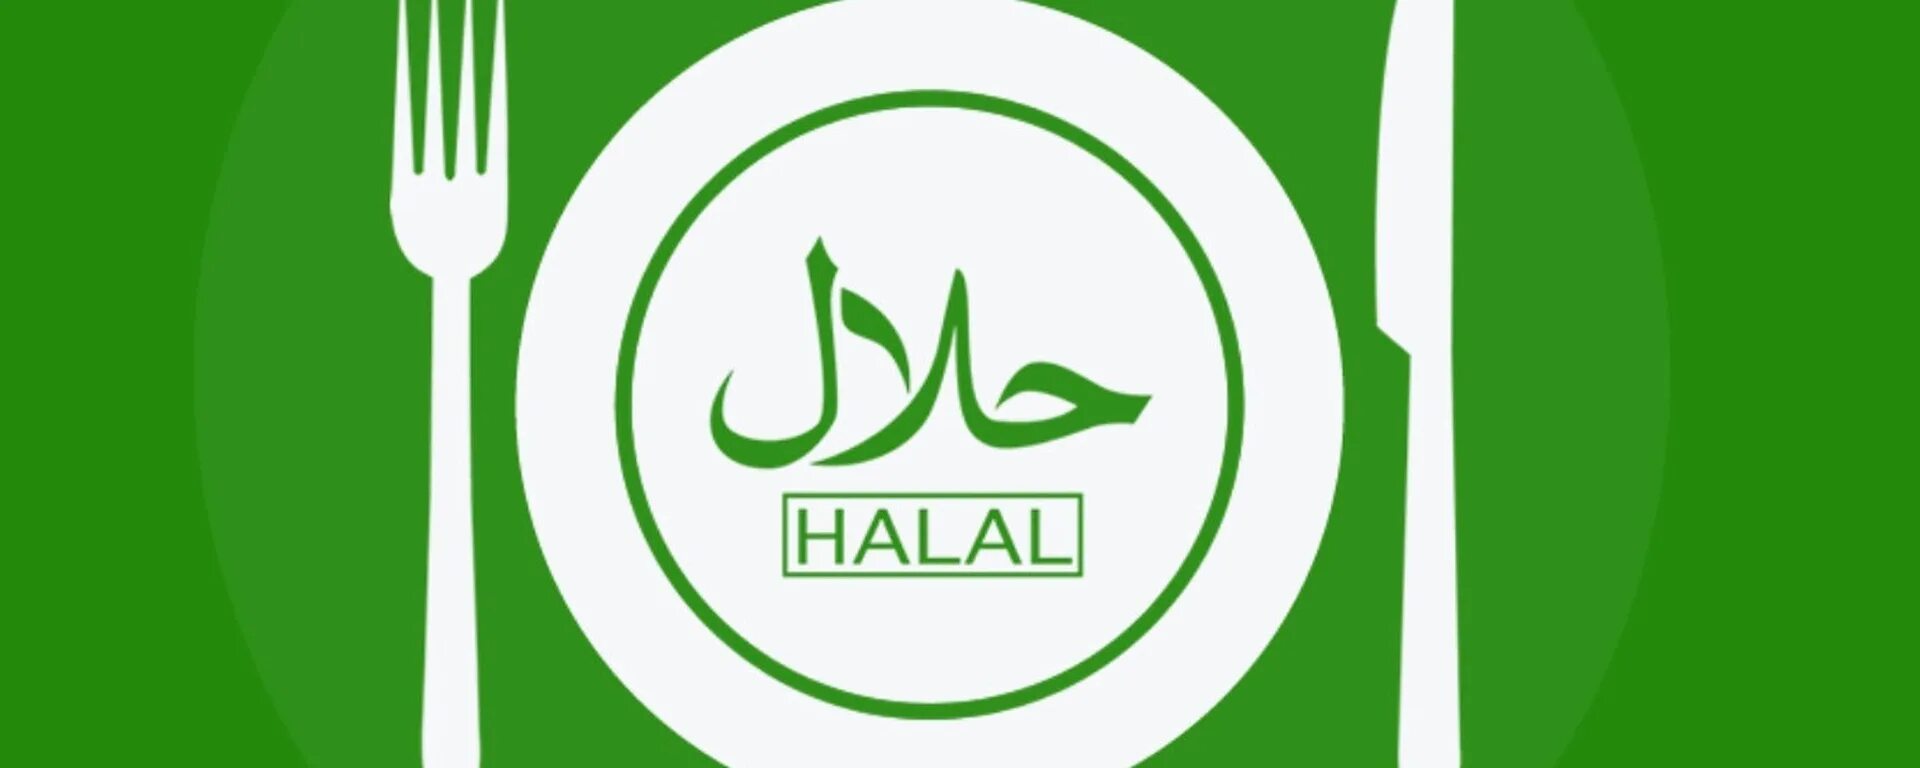 Халяль на русском. Халяль. Эмблема Халяль. Логотип кафе Халяль. Значок Халяль зеленый.